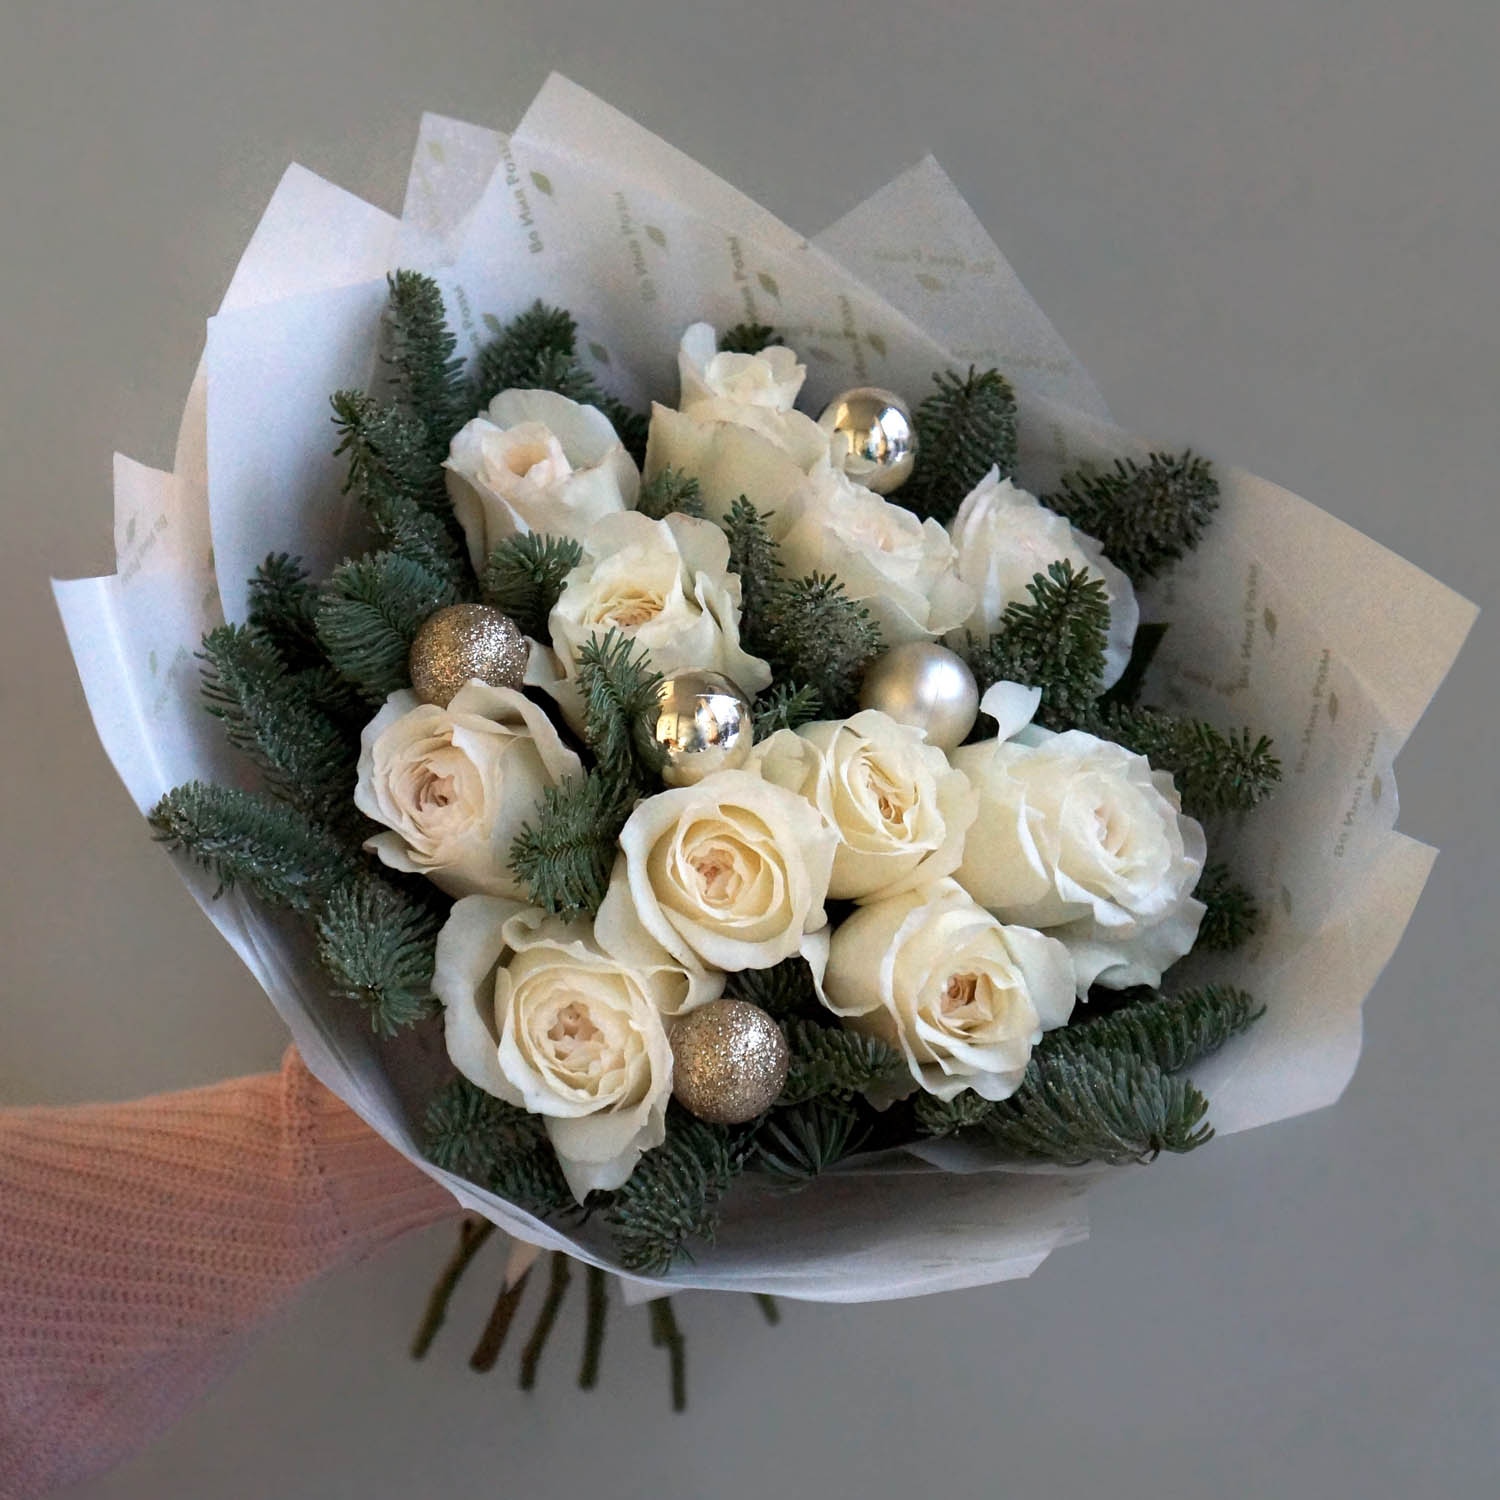 новогодний букет с нобилисом и белыми розами в фирменной бумаге во имя розы и новогодним декором